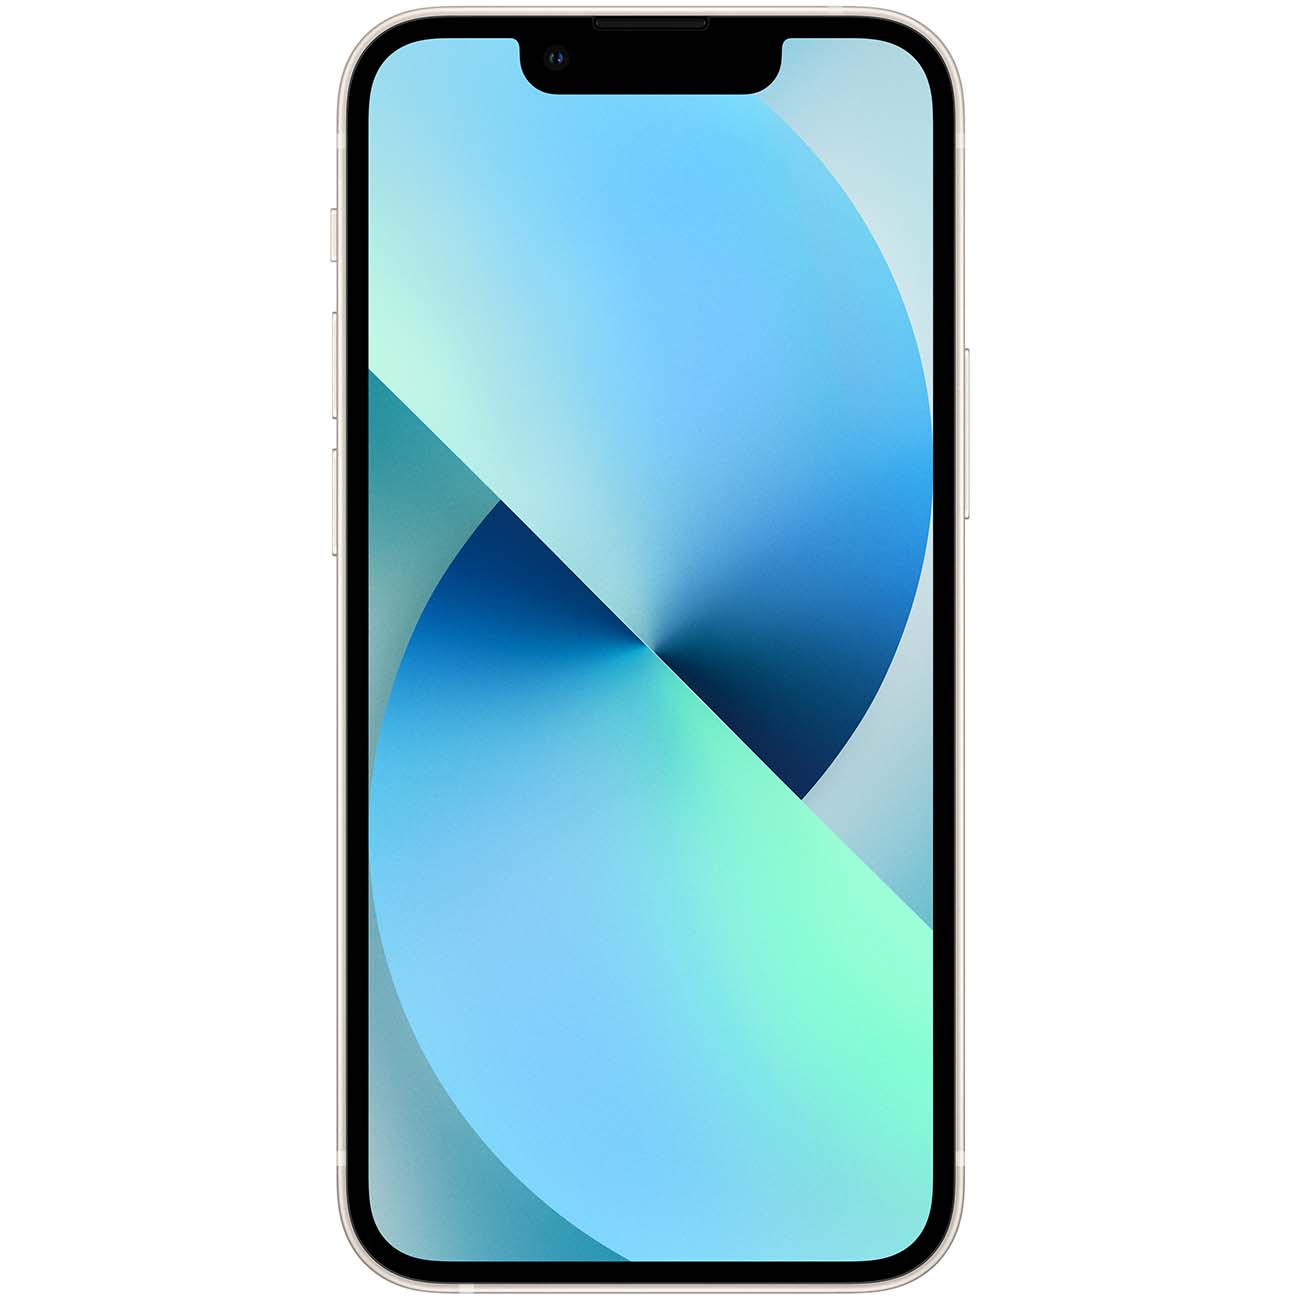 Купить смартфон apple iphone 13 mini 512gb starlight Apple iPhone 13 mini в официальном магазине Apple, Samsung, Xiaomi. iPixel.ru Купить, заказ, кредит, рассрочка, отзывы,  характеристики, цена,  фотографии, в подарок.